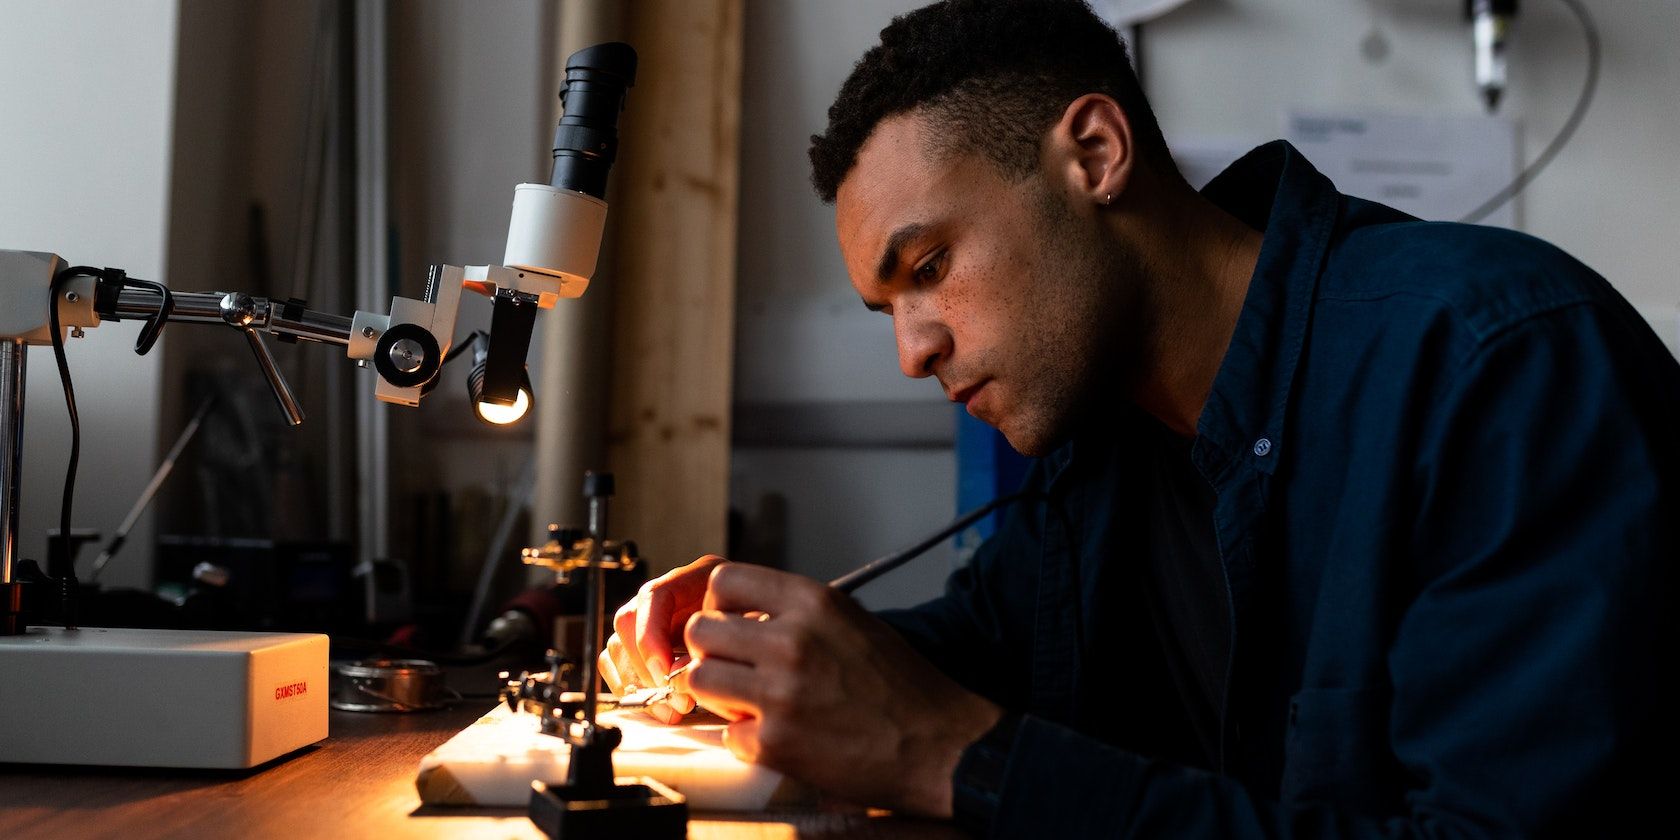 A man soldering a machine in a workshop